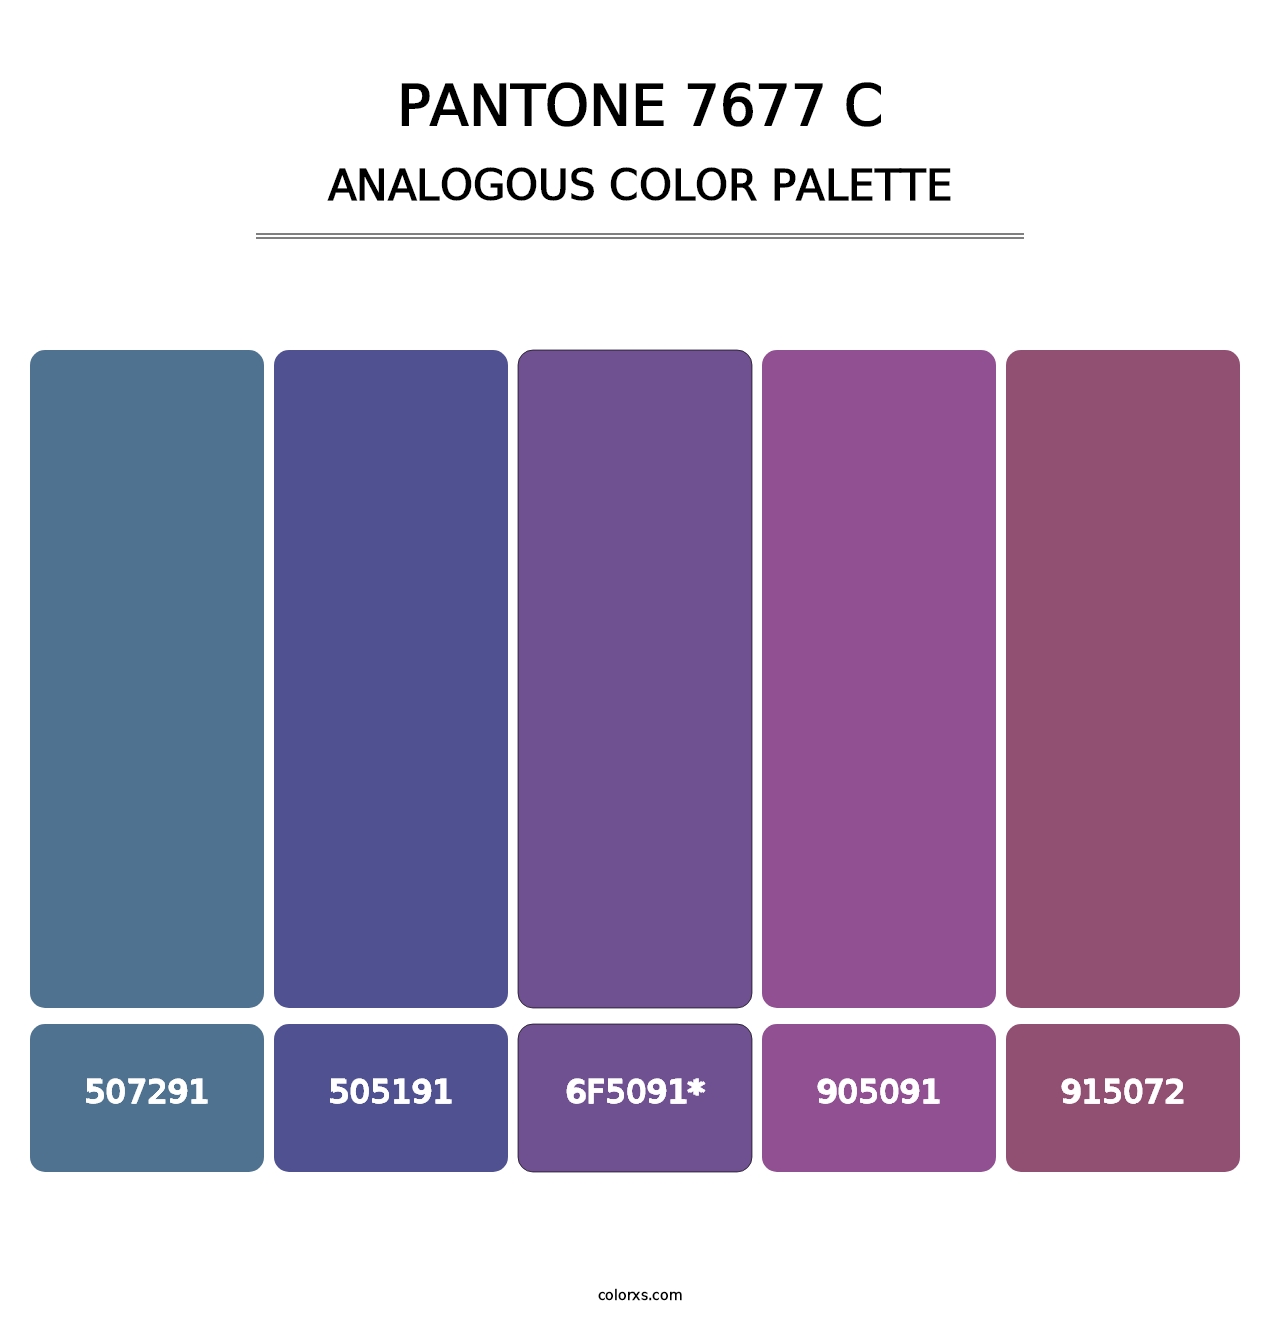 PANTONE 7677 C - Analogous Color Palette